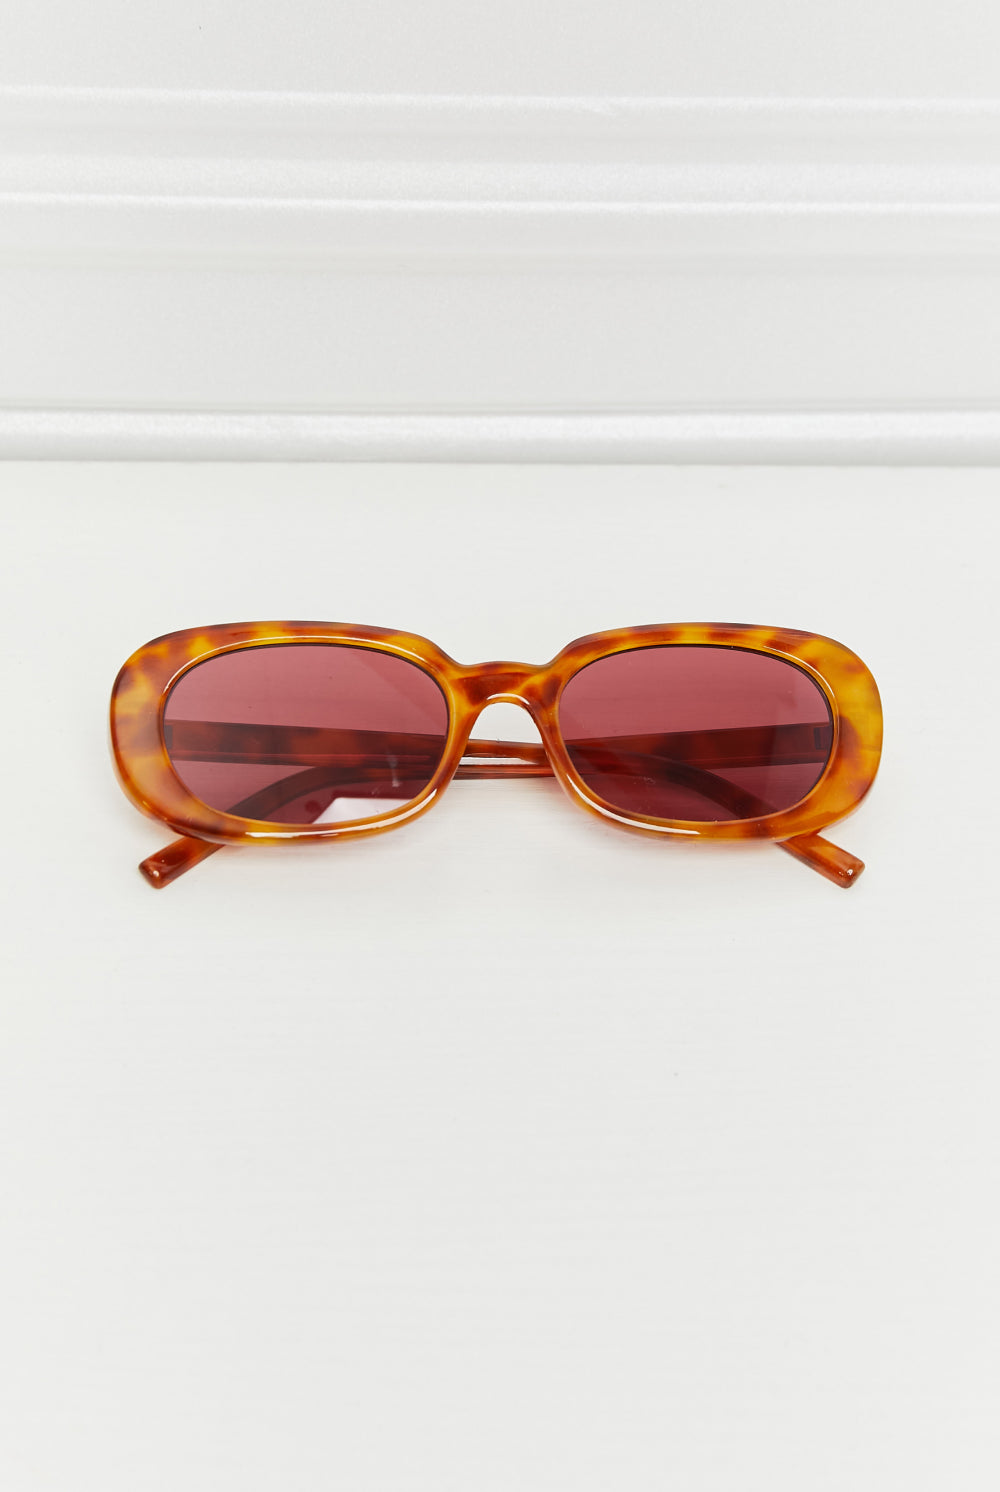 Lavender Oval Full Rim Sunglasses Accessories